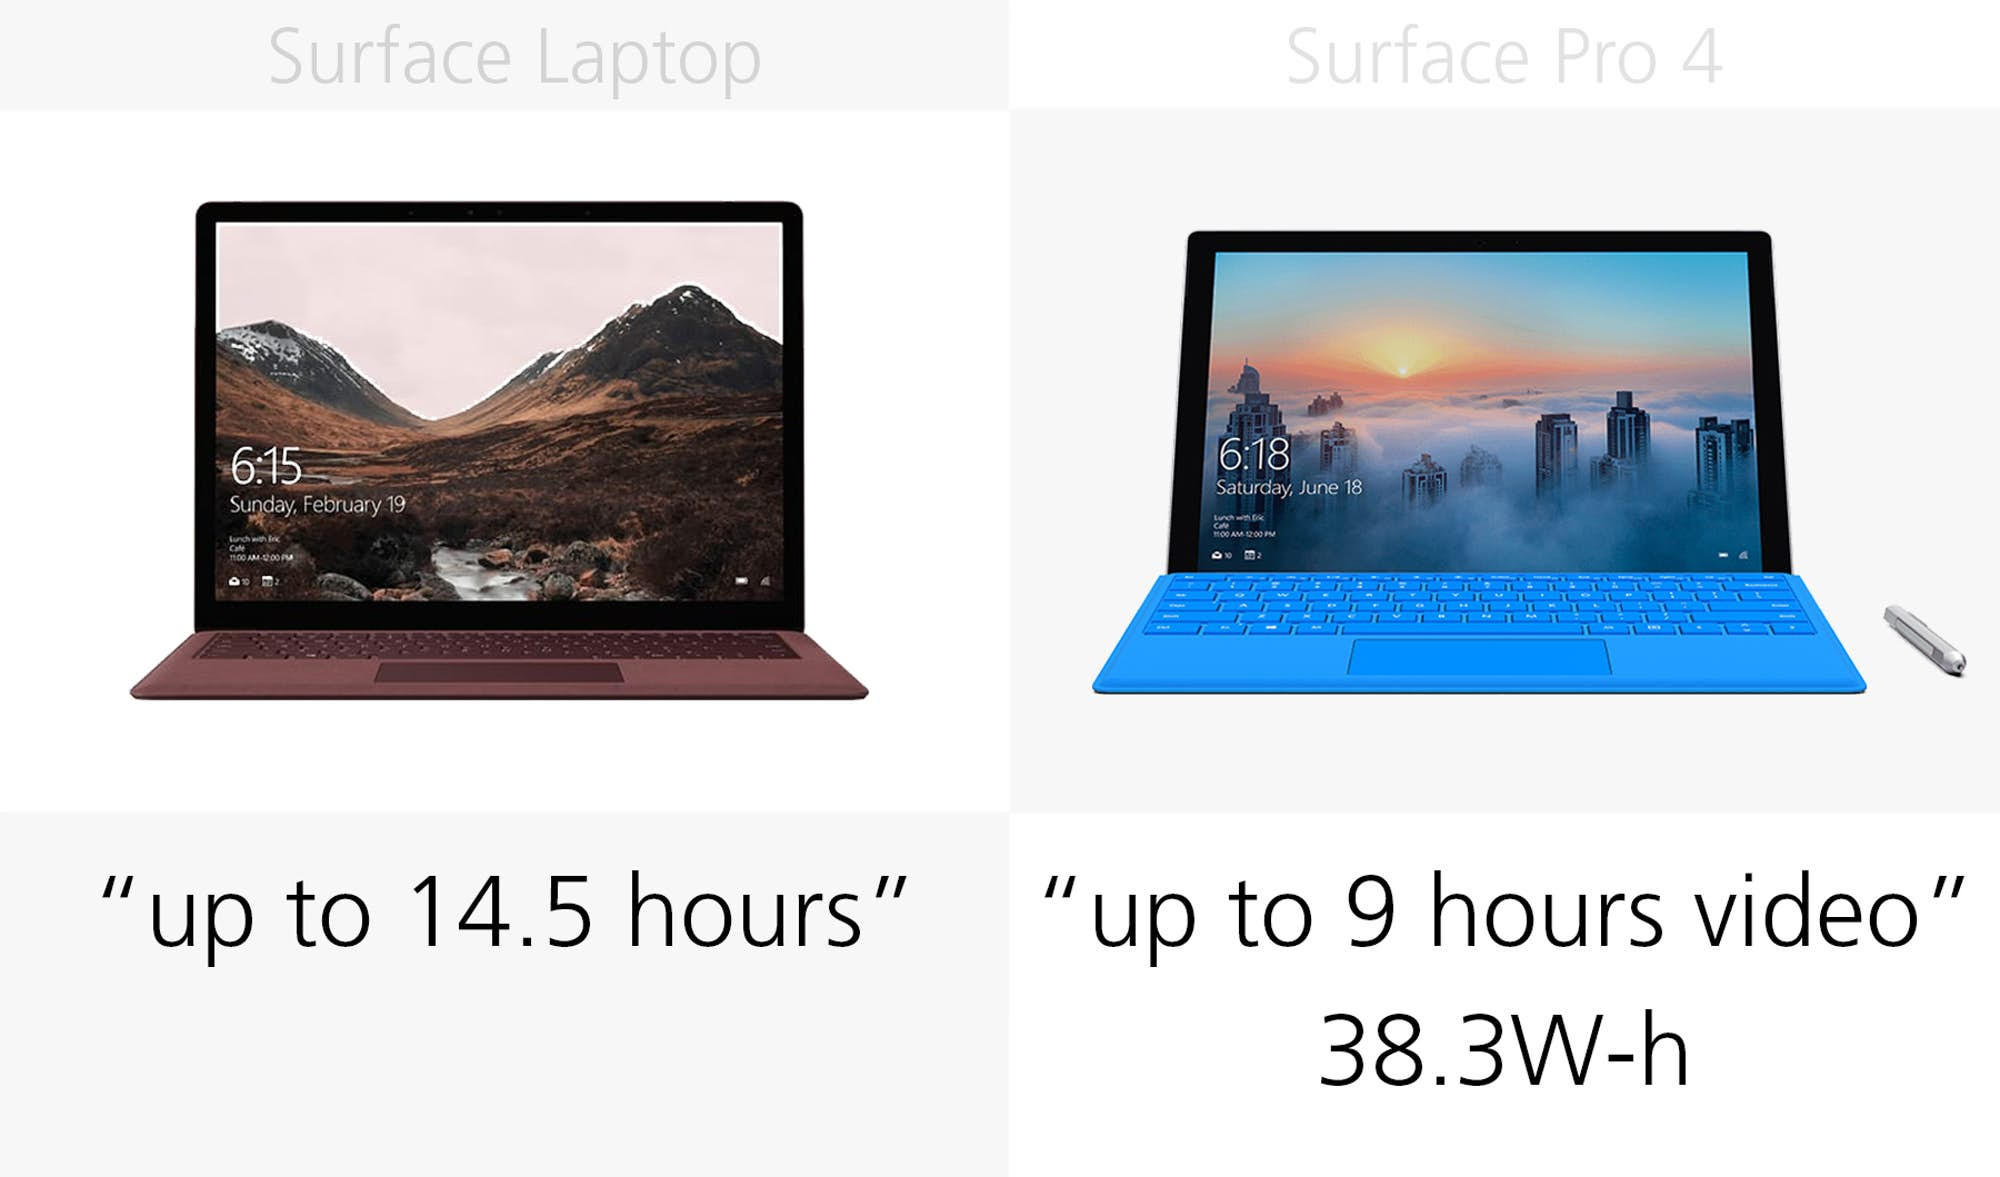 1493969716_microsoft-surface-laptop-vs-surface-pro-4-specs-comparison-6.jpg